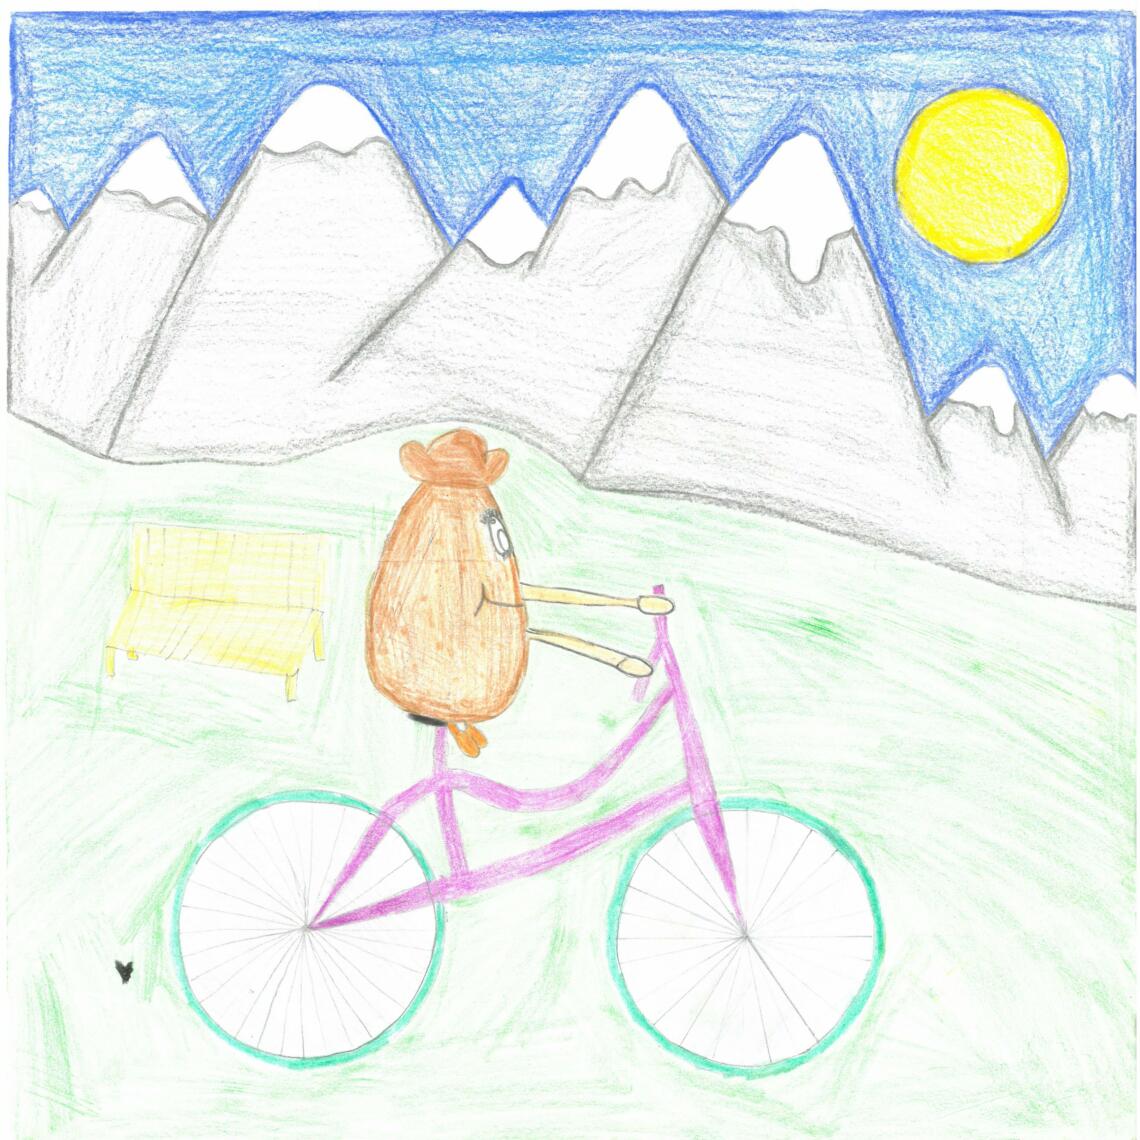 Fantasie- Figur fährt mit Fahrrad. Im Hintergrund sind Berge.